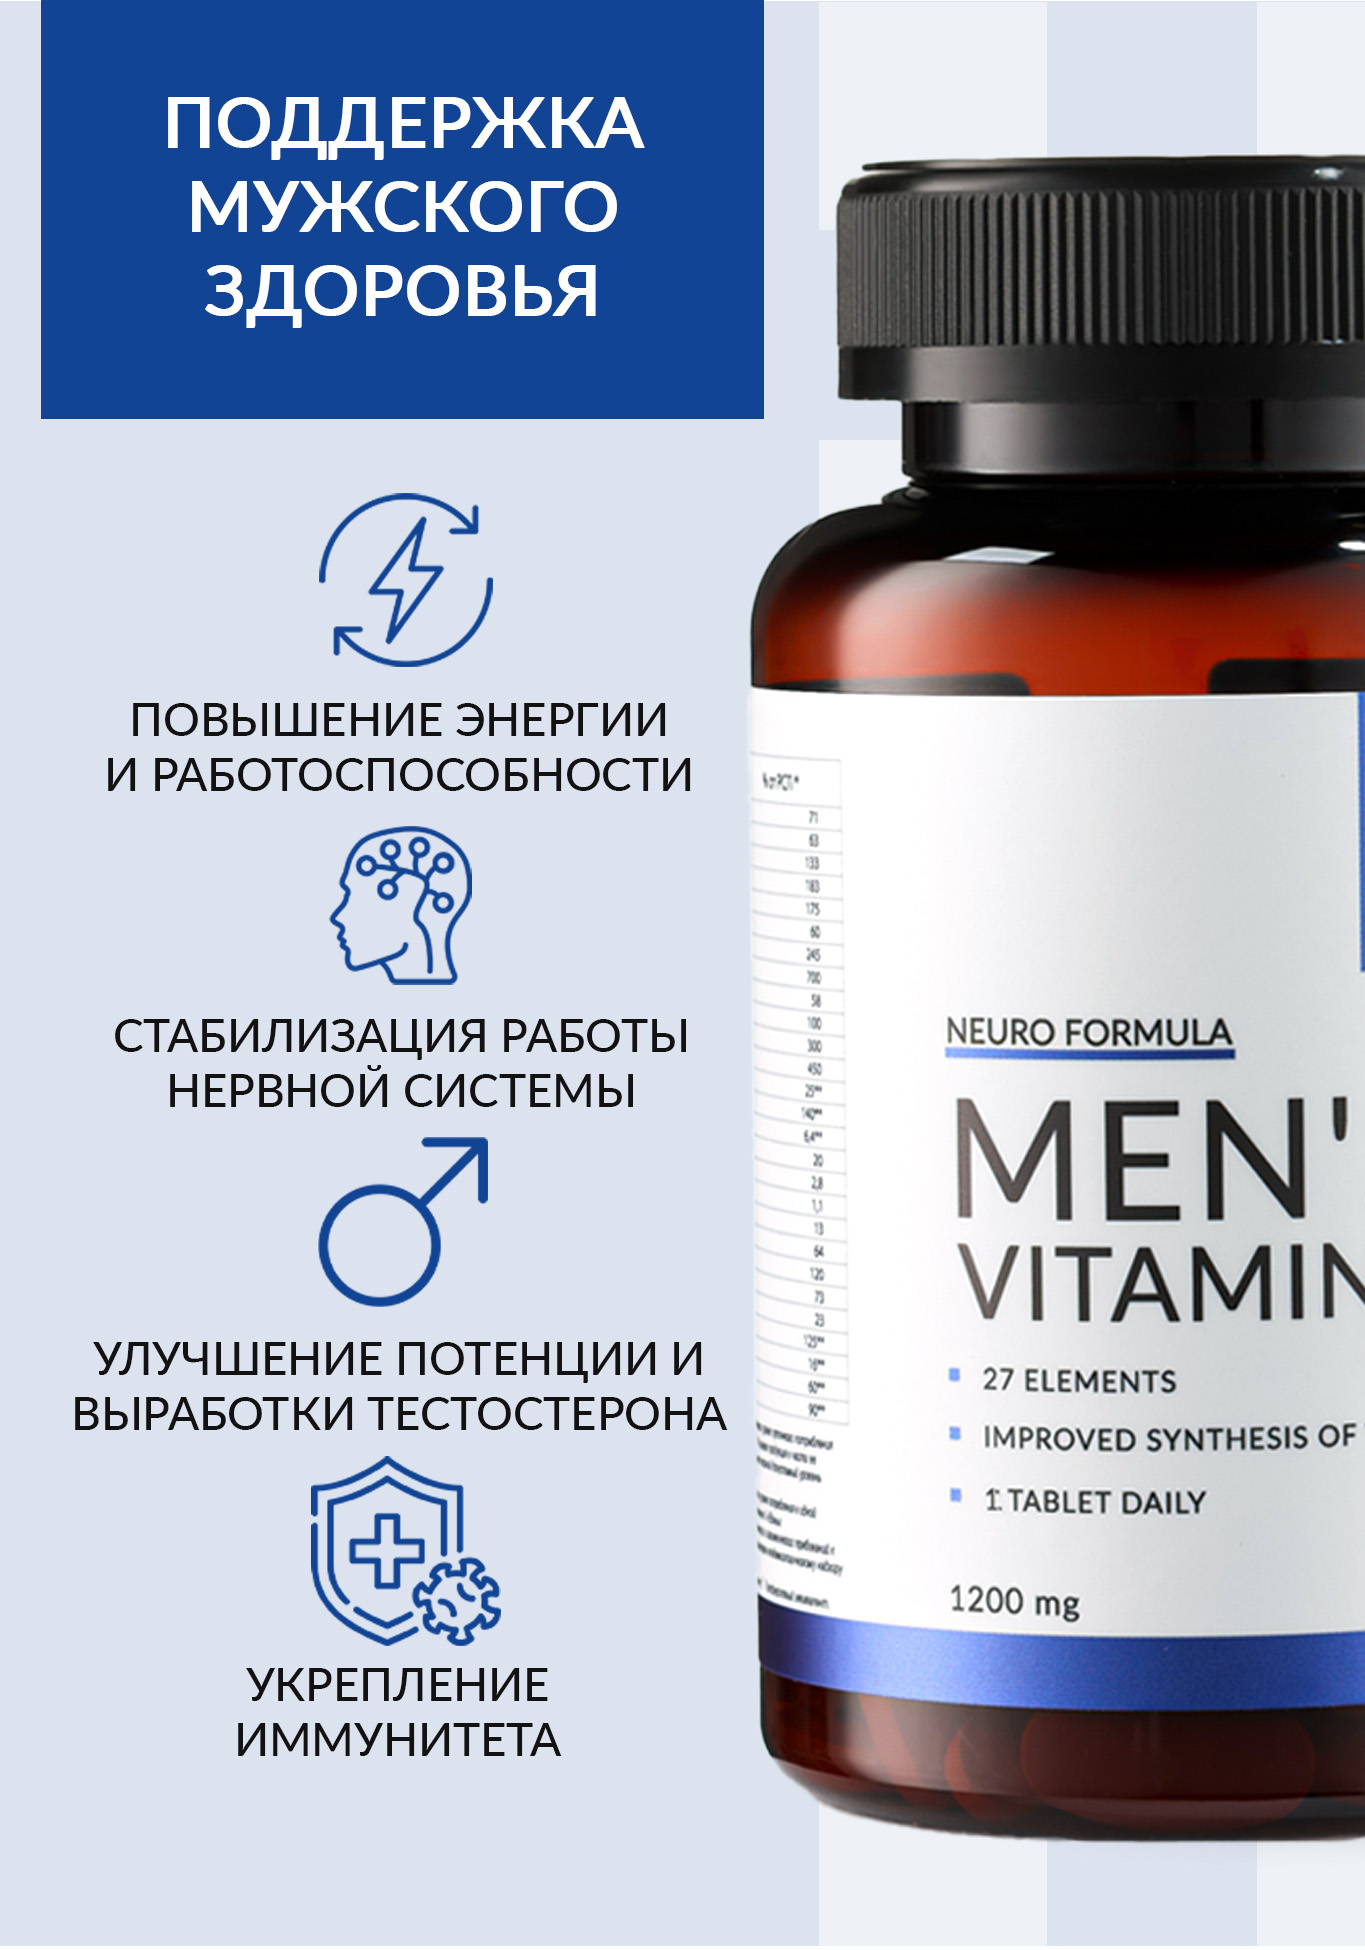 Men vitamin`s (Витамины для мужчин) NUTRIPOLIS - фото 2